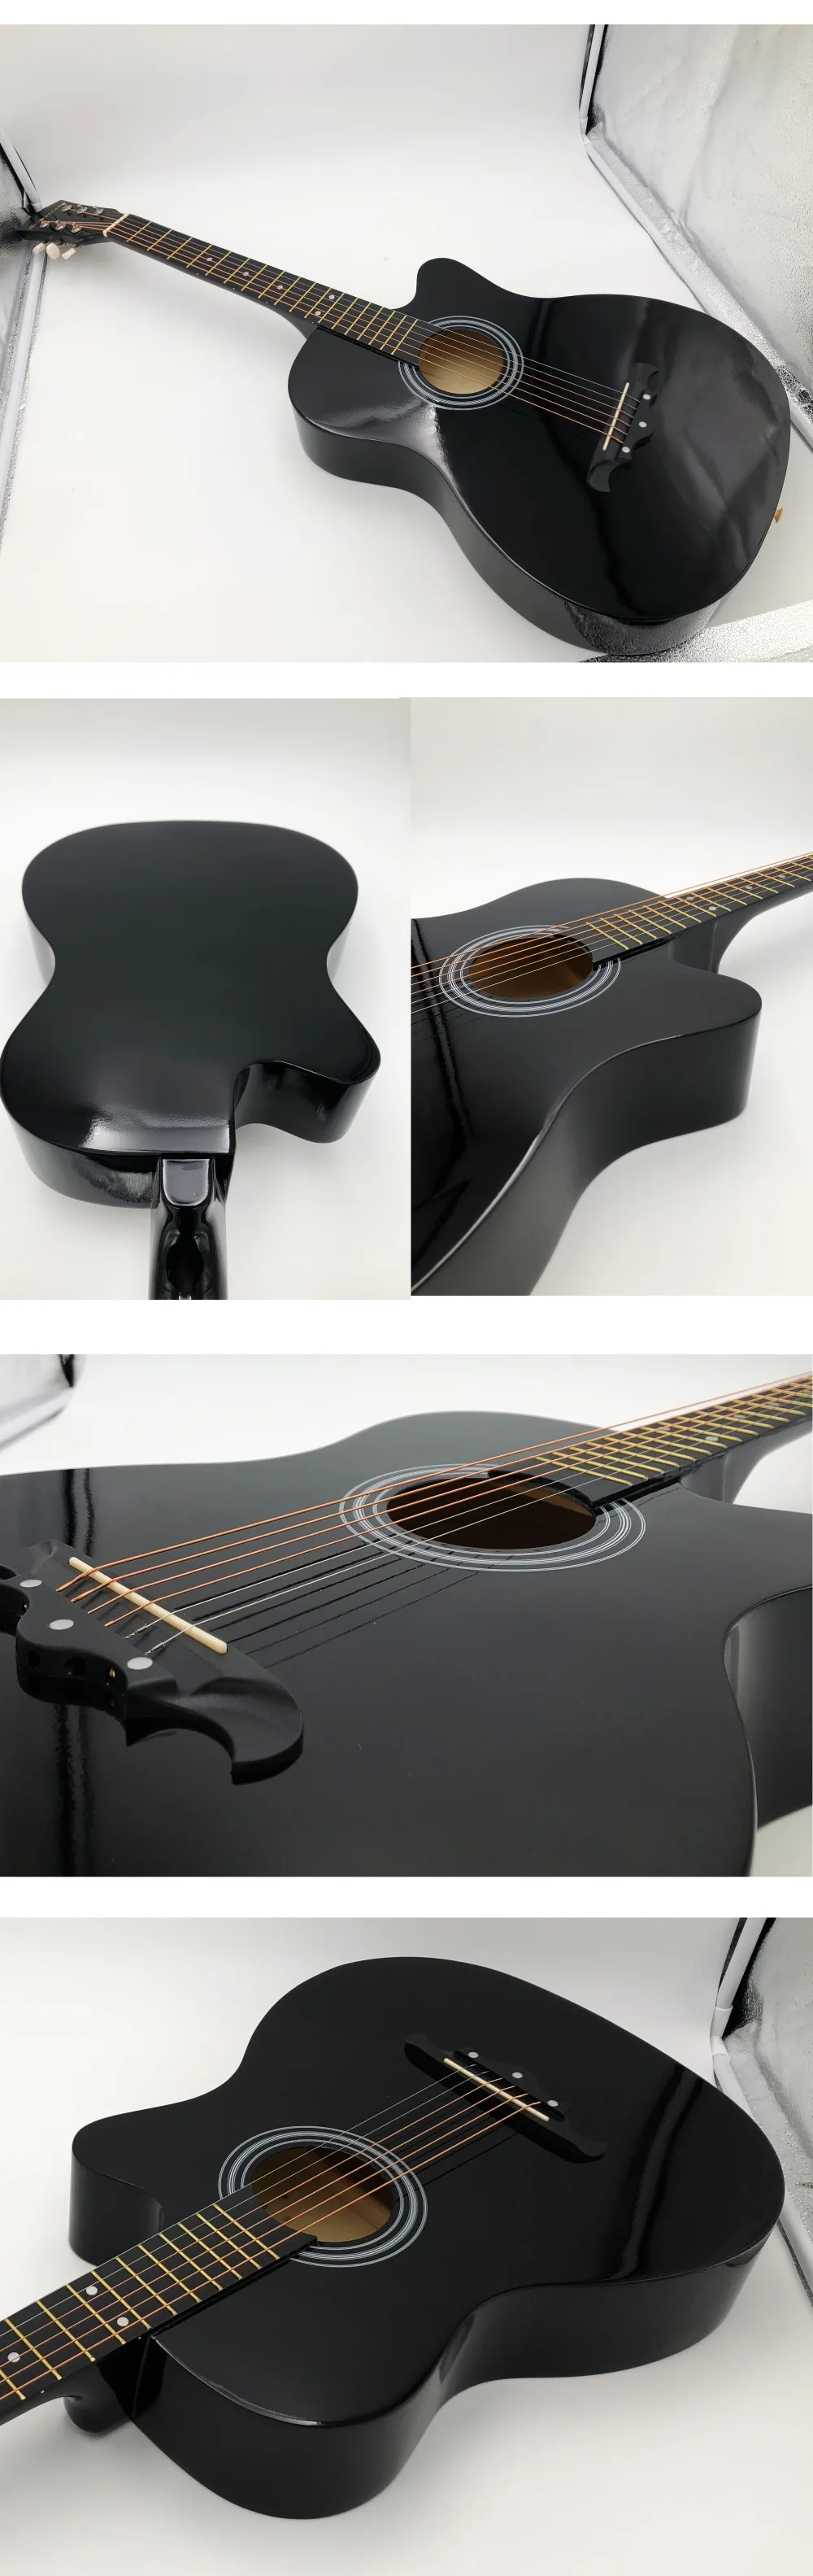 38/41 дюймов Акустическая гитара для начинающих наборы с Капо медиаторами 6 струн гитара липа Музыкальные инструменты AGT166